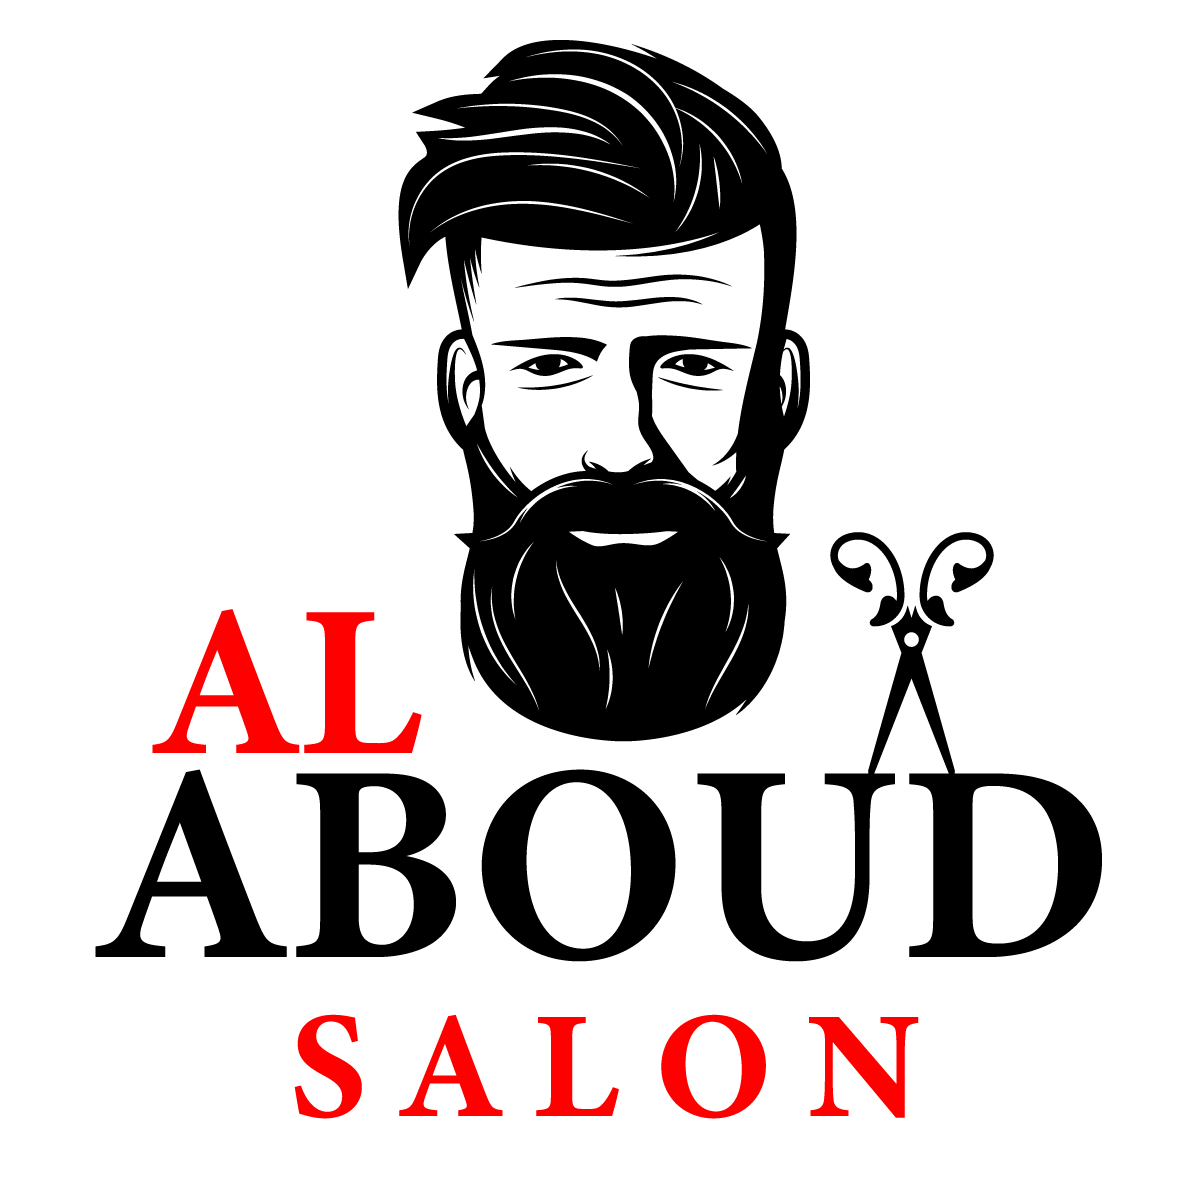 Alaboud-logos